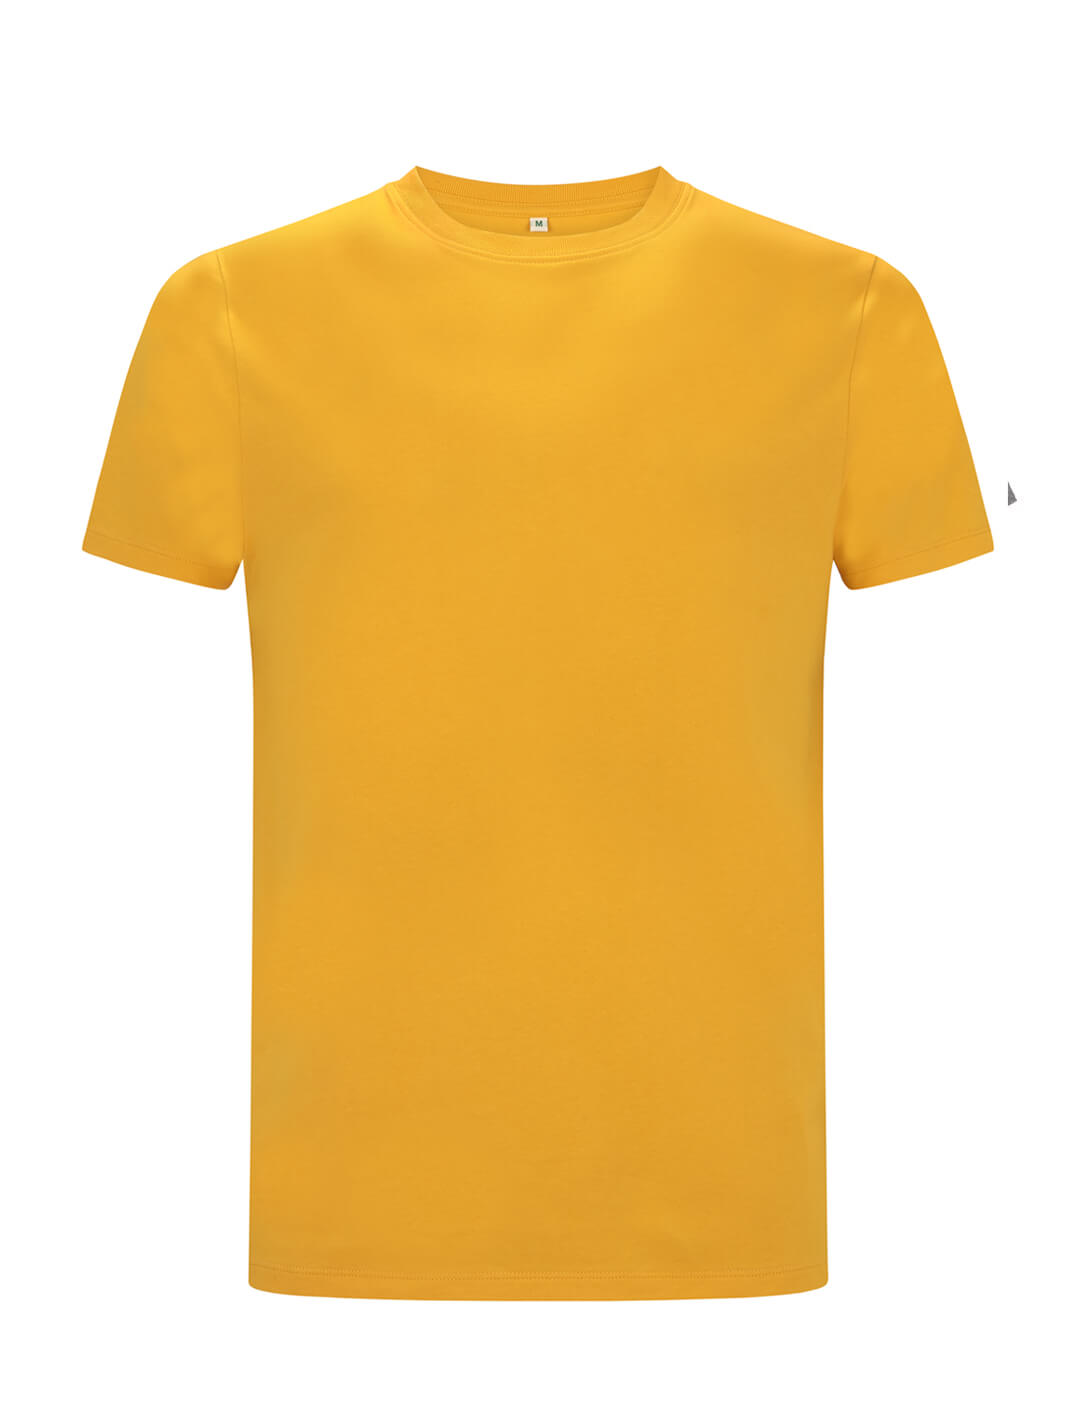 Żółty ekologiczny t-shirt unisex z własnym nadrukiem firmowym Continental Jersey t-shirt EP18